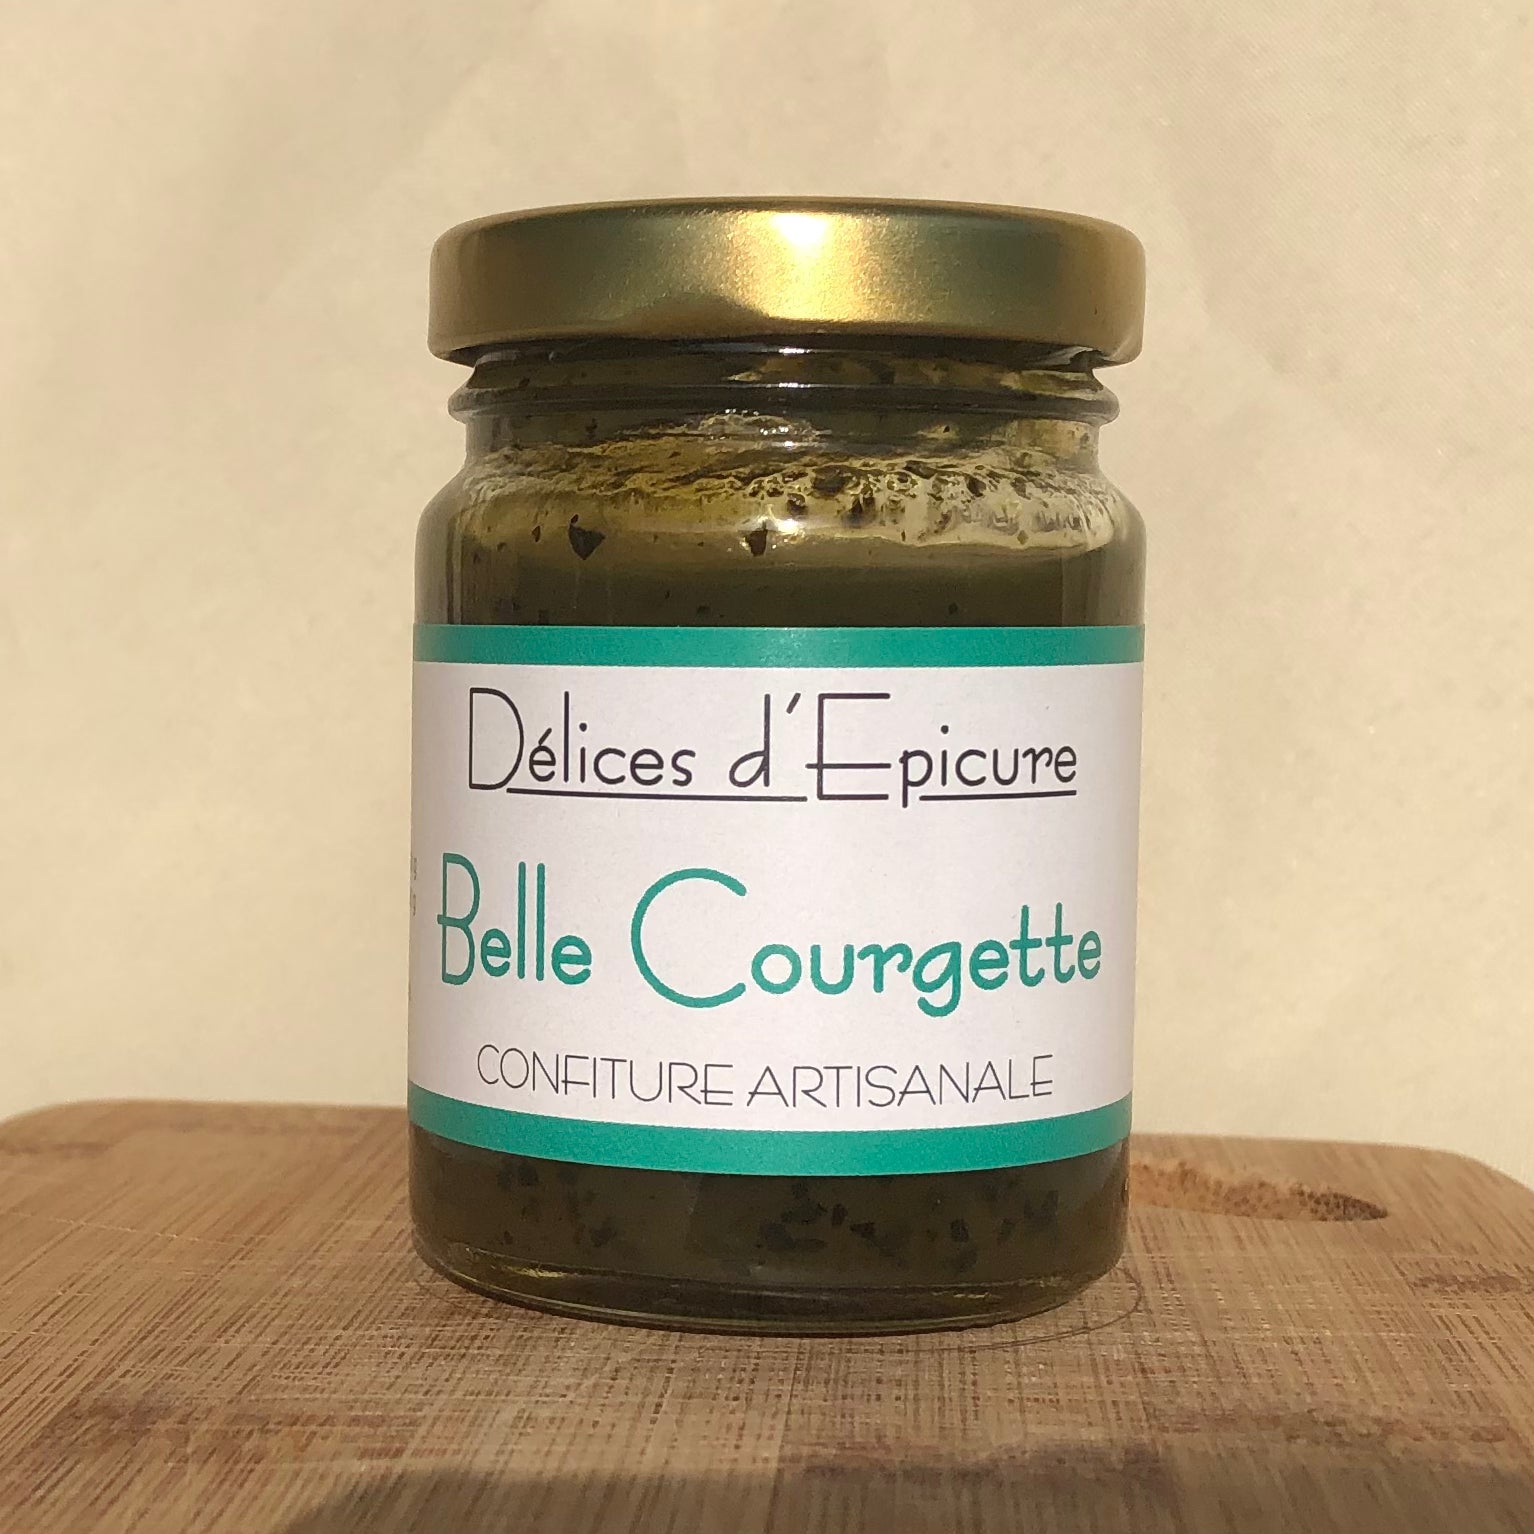 Confiture artisanale de Courgette - Délices d'epicure - Belle Courgette